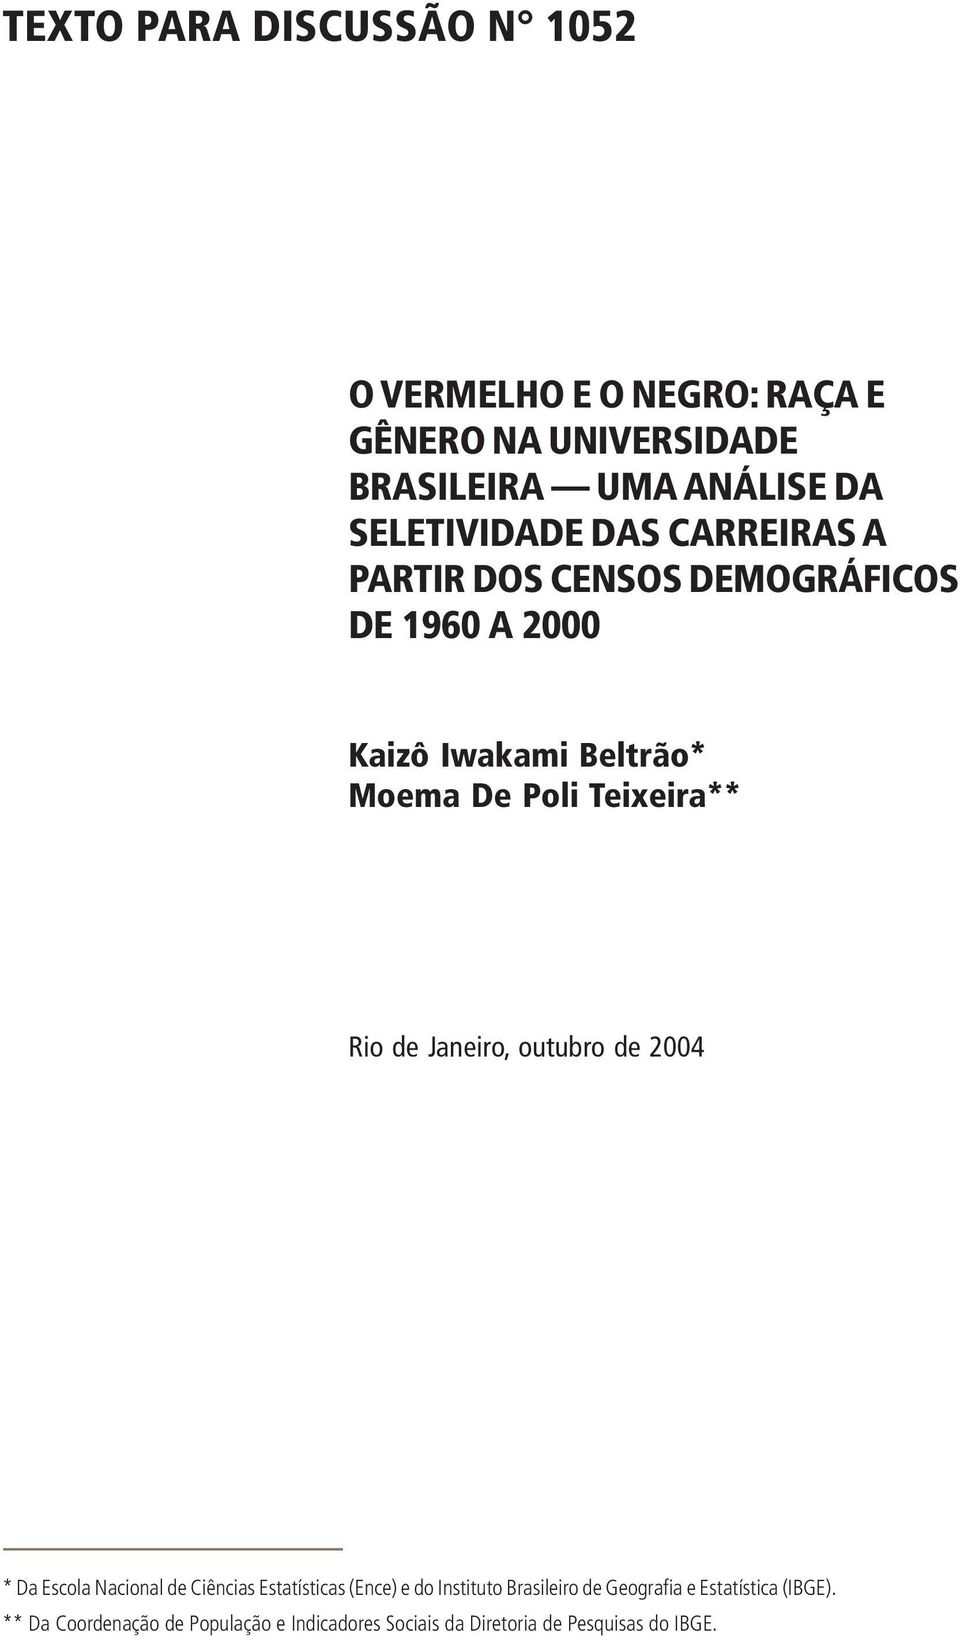 Teixeir** Rio de Jneiro, outubro de 2004 * D Escol Ncionl de Ciêncis Esttístics (Ence) e do Instituto